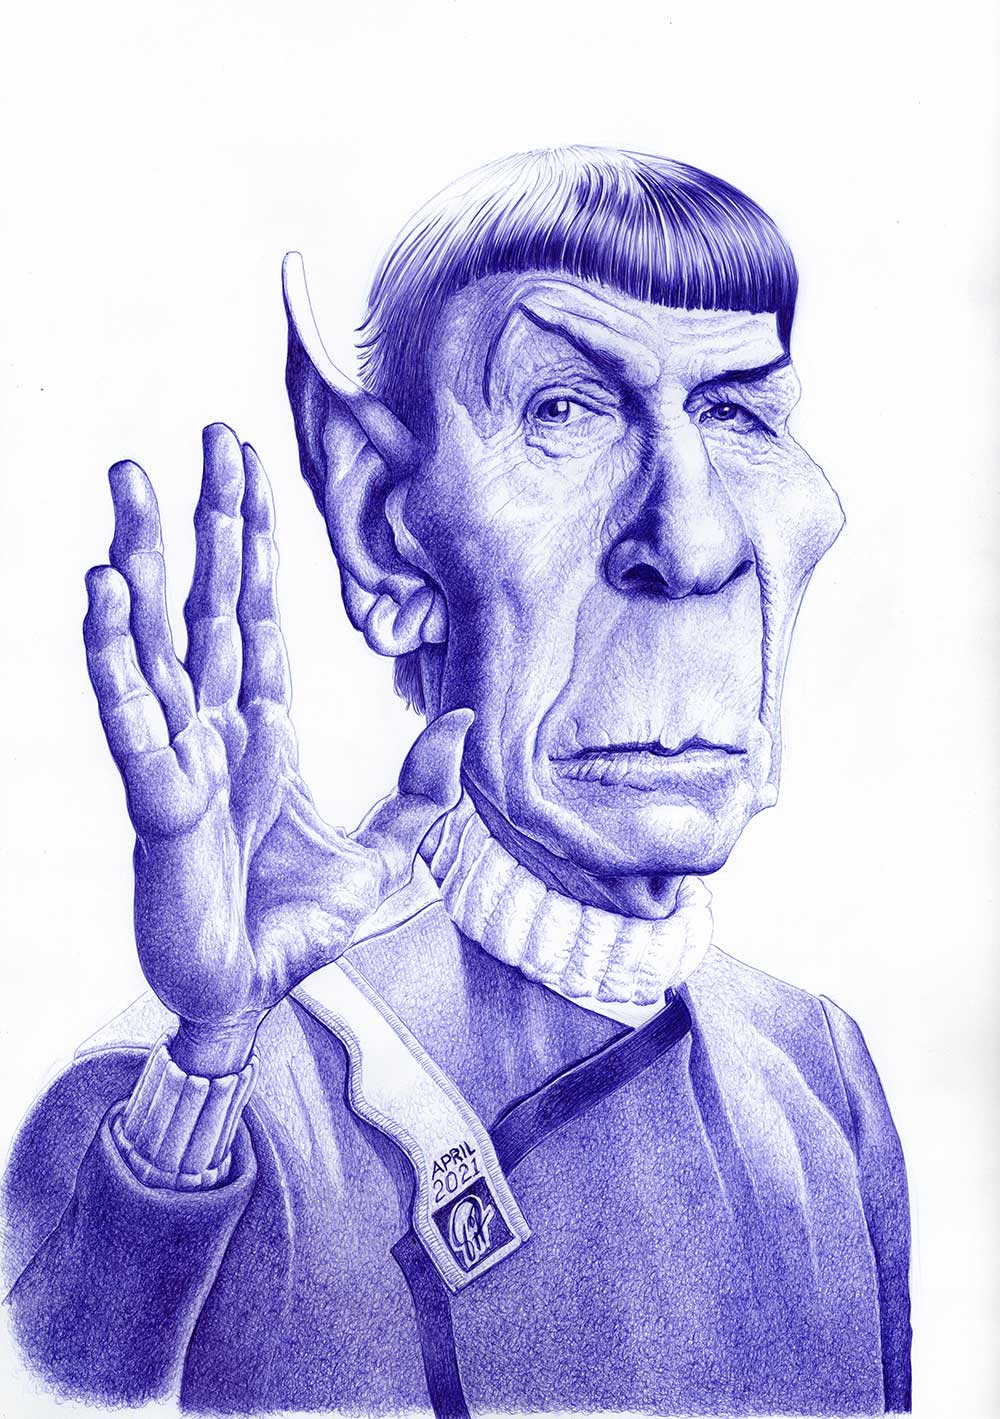 Leonard Nimoy/Spock | Kugelschreiber-Zeichnung | ballpen drawing